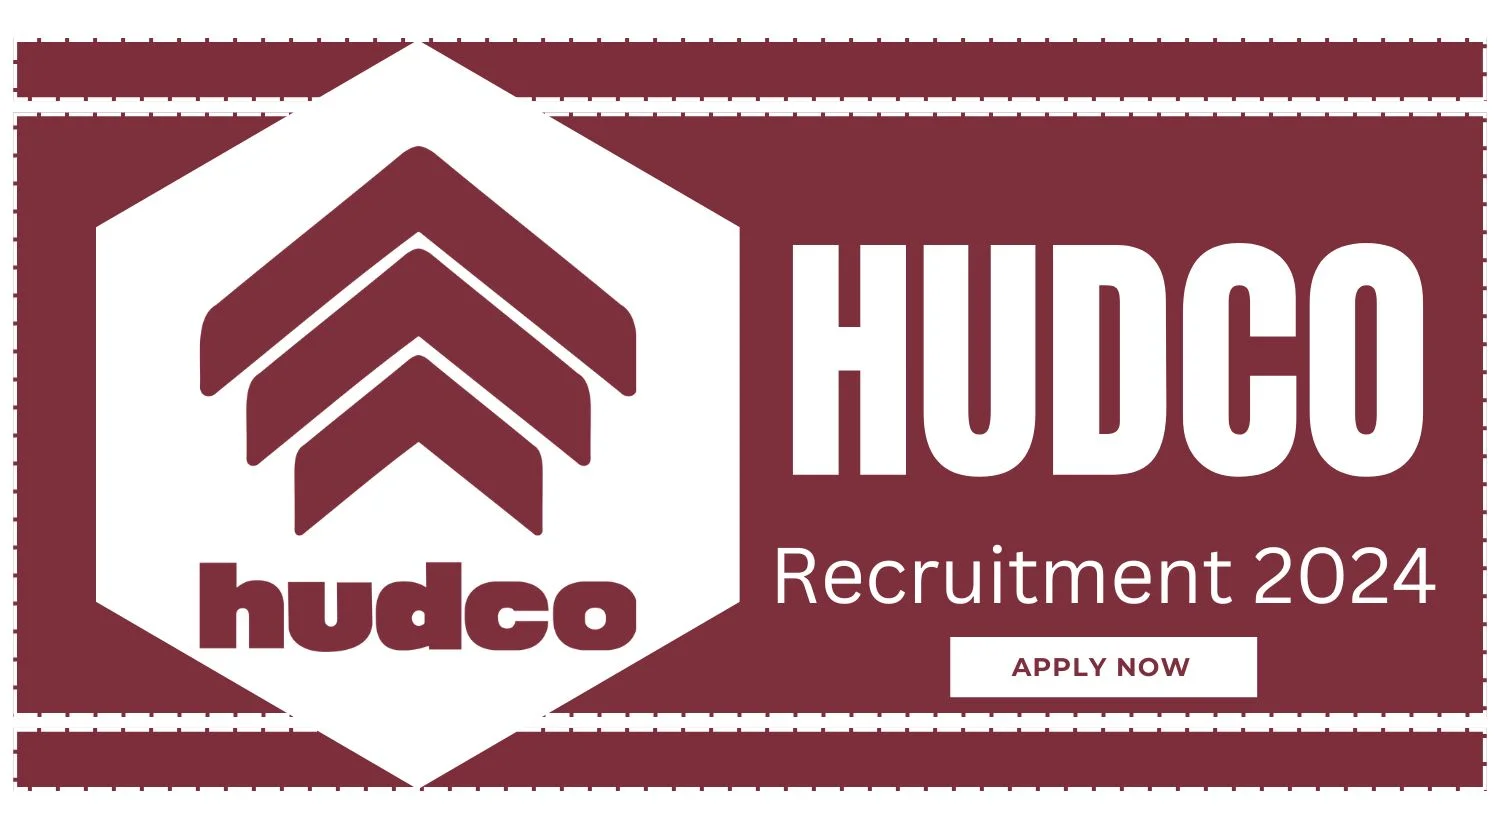 HUDCO Assistant Executive Recruitment 2024